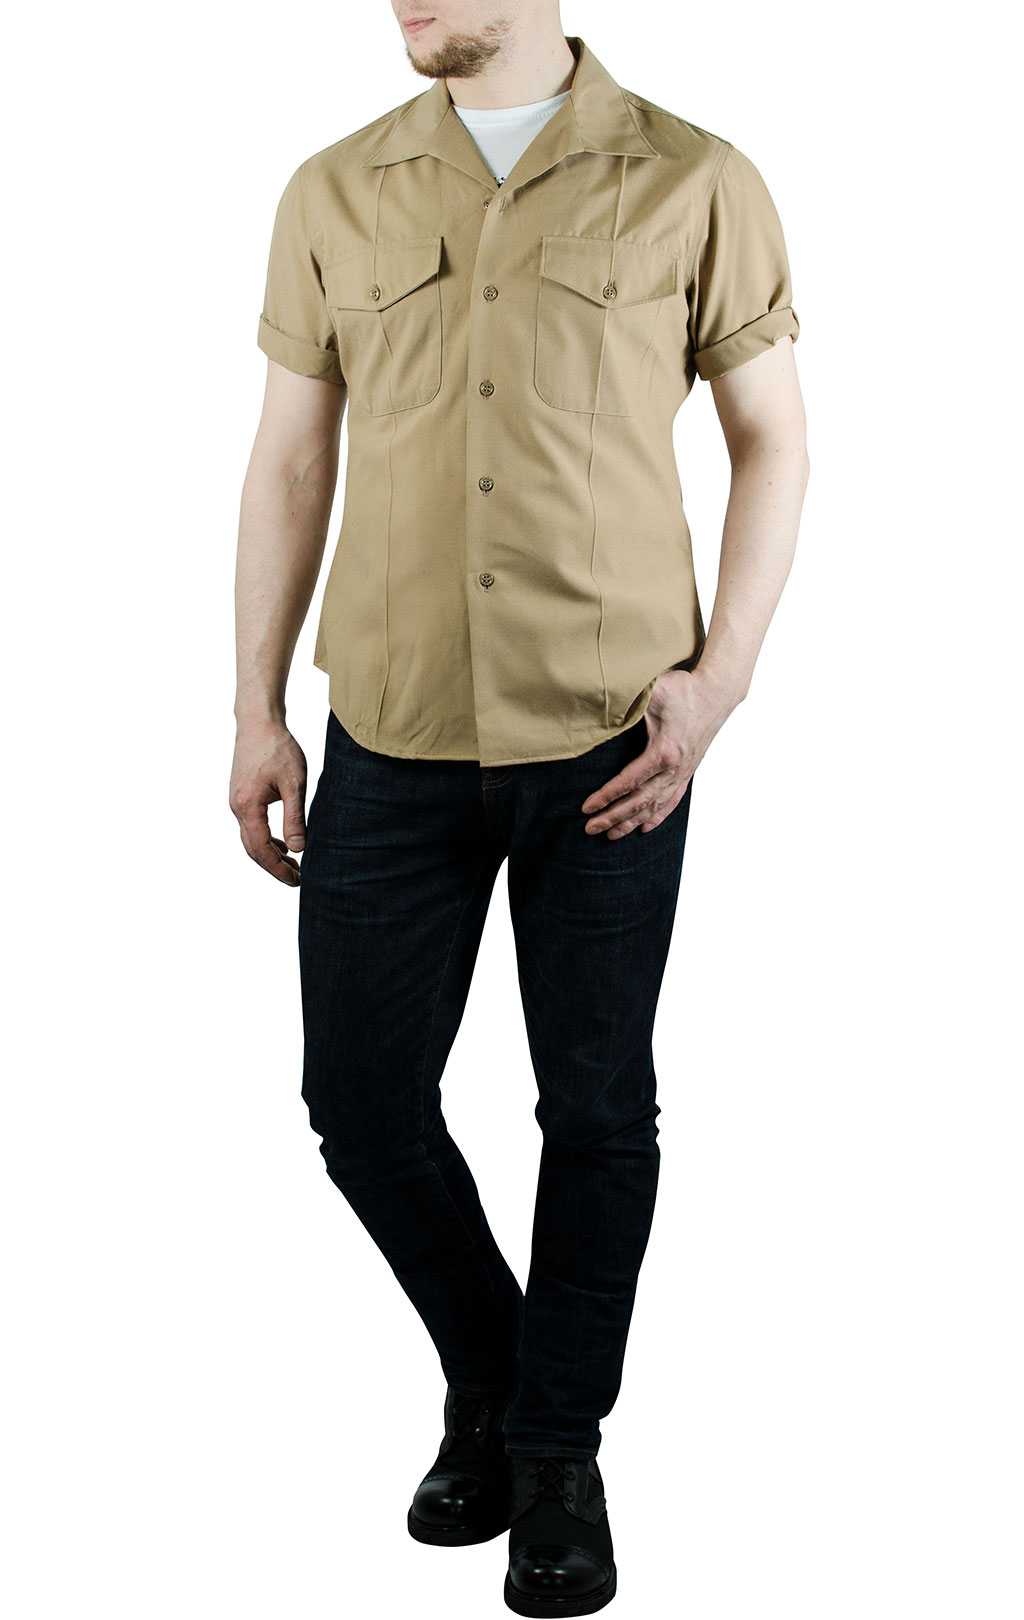 Рубашка USMC короткий рукав khaki б/у США